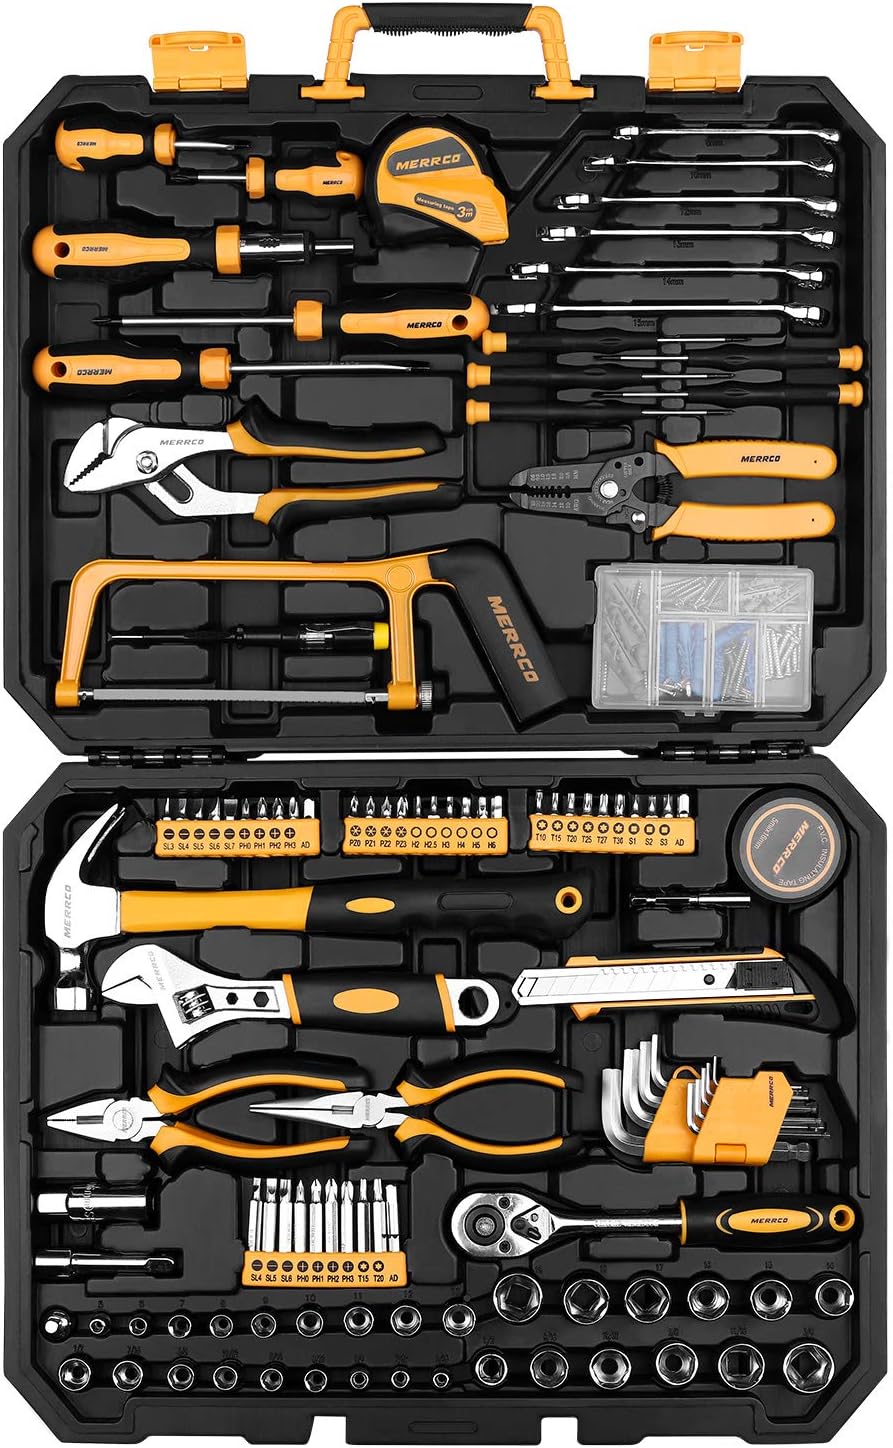 DEKOPRO 198 Piece Home Repair Tool Kit Review